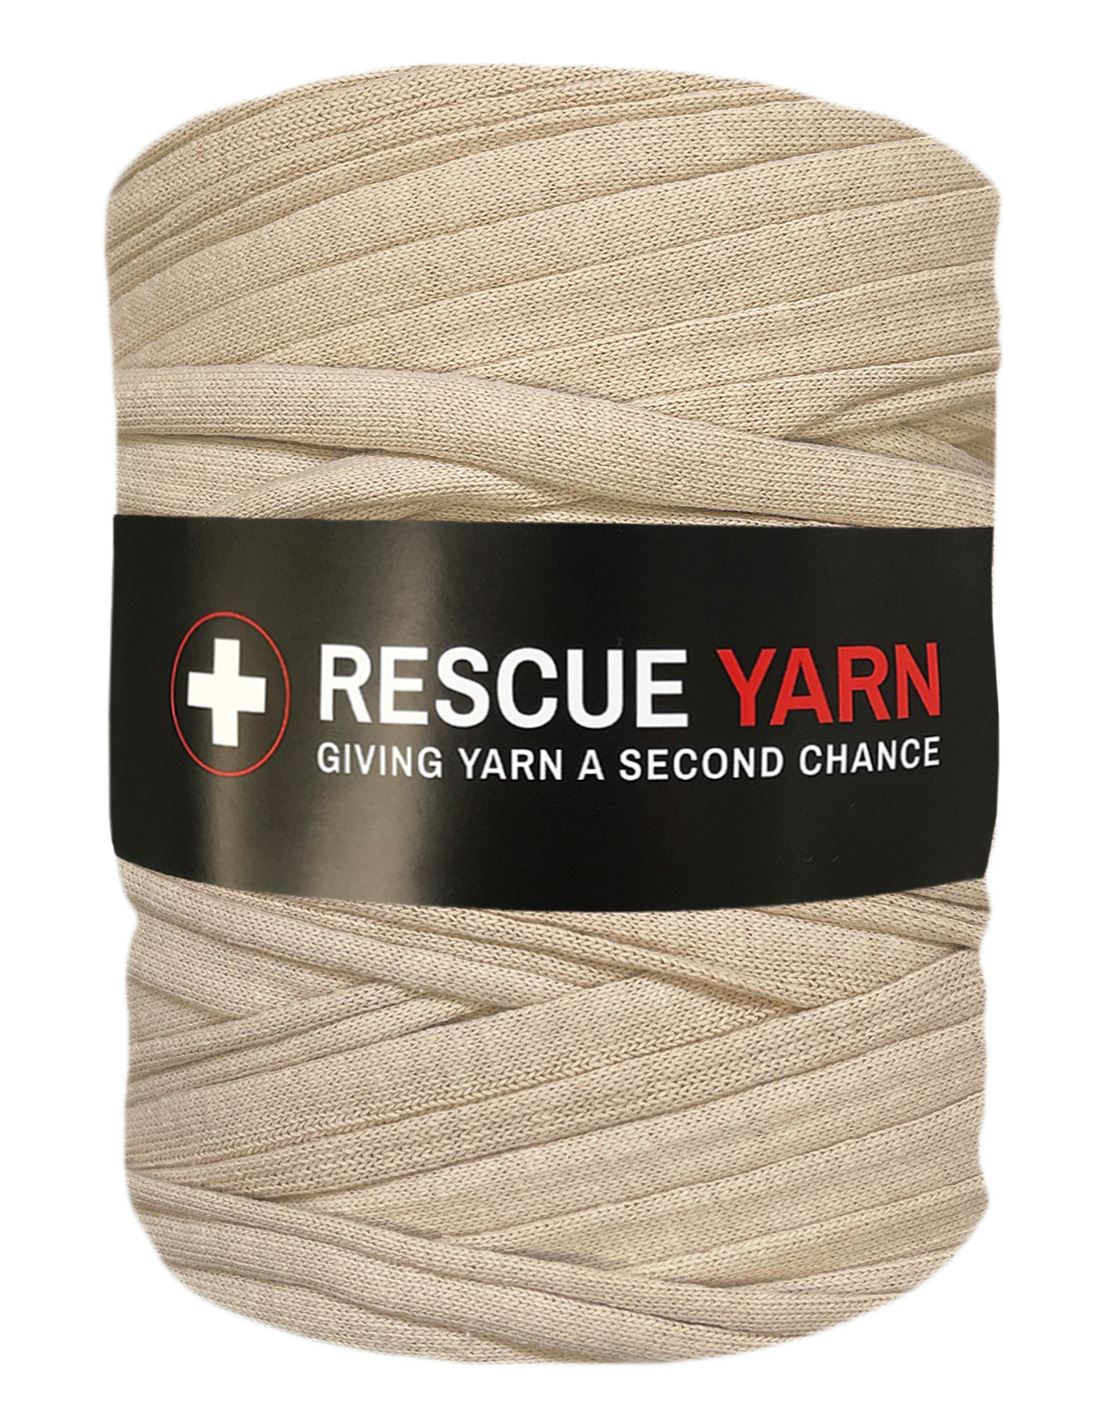 Pale sand t-shirt yarn by Rescue Yarn (100-120m)